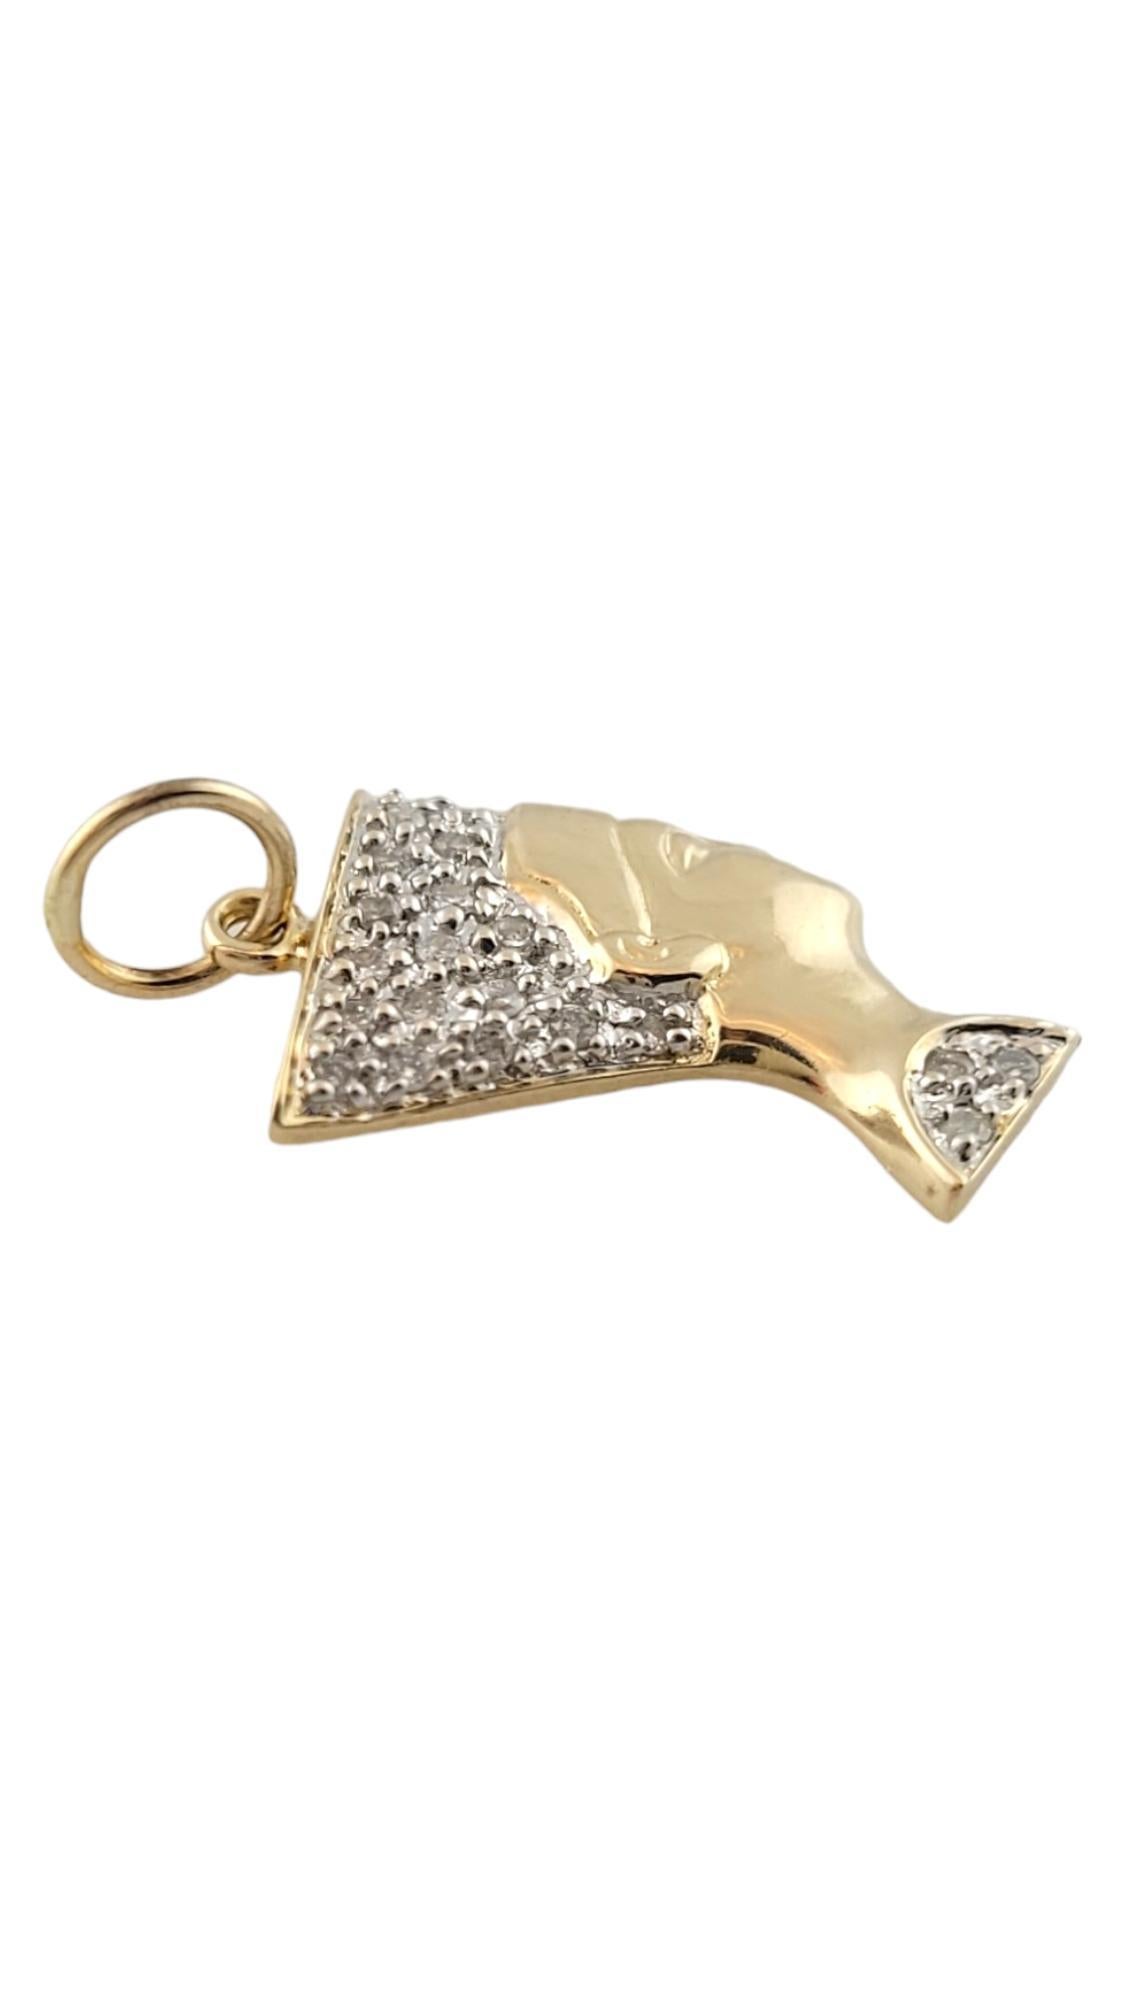 Taille brillant Breloque Nefertiti tête en or jaune 14 carats et diamants n° 16250 en vente